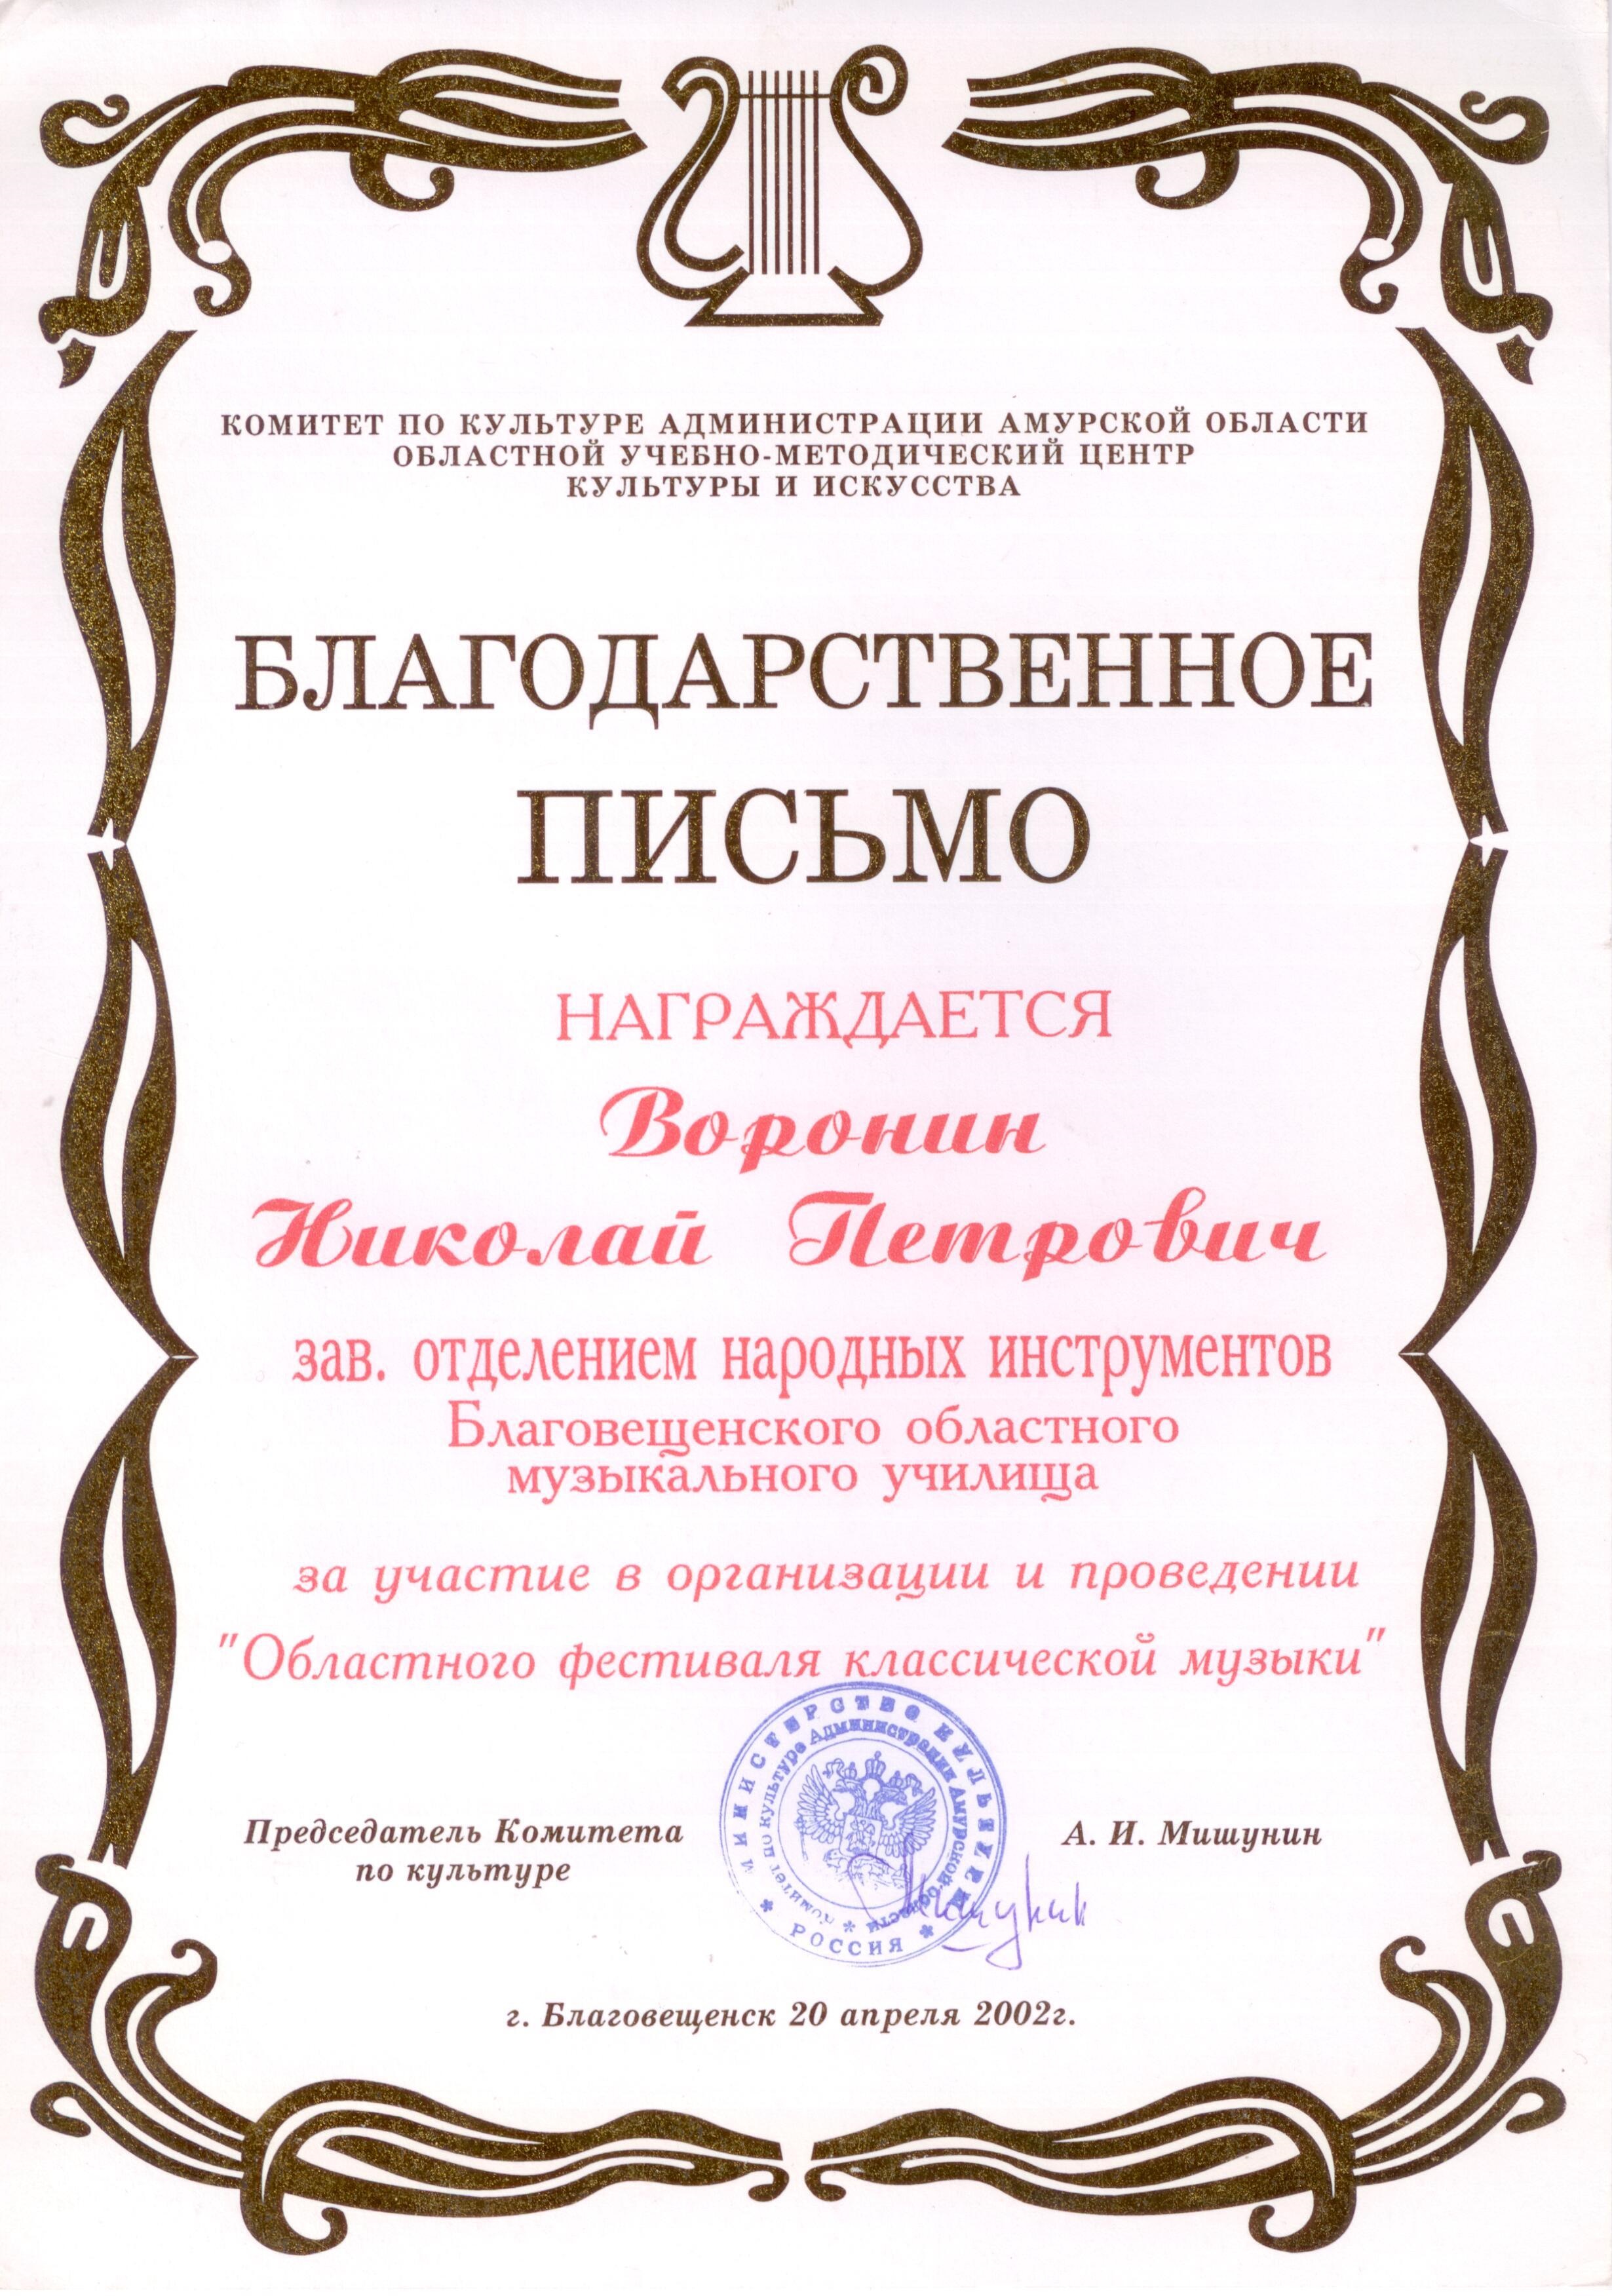 Благодарственное письмо Николаю Воронину за проведение Областного фестиваля классической музыки